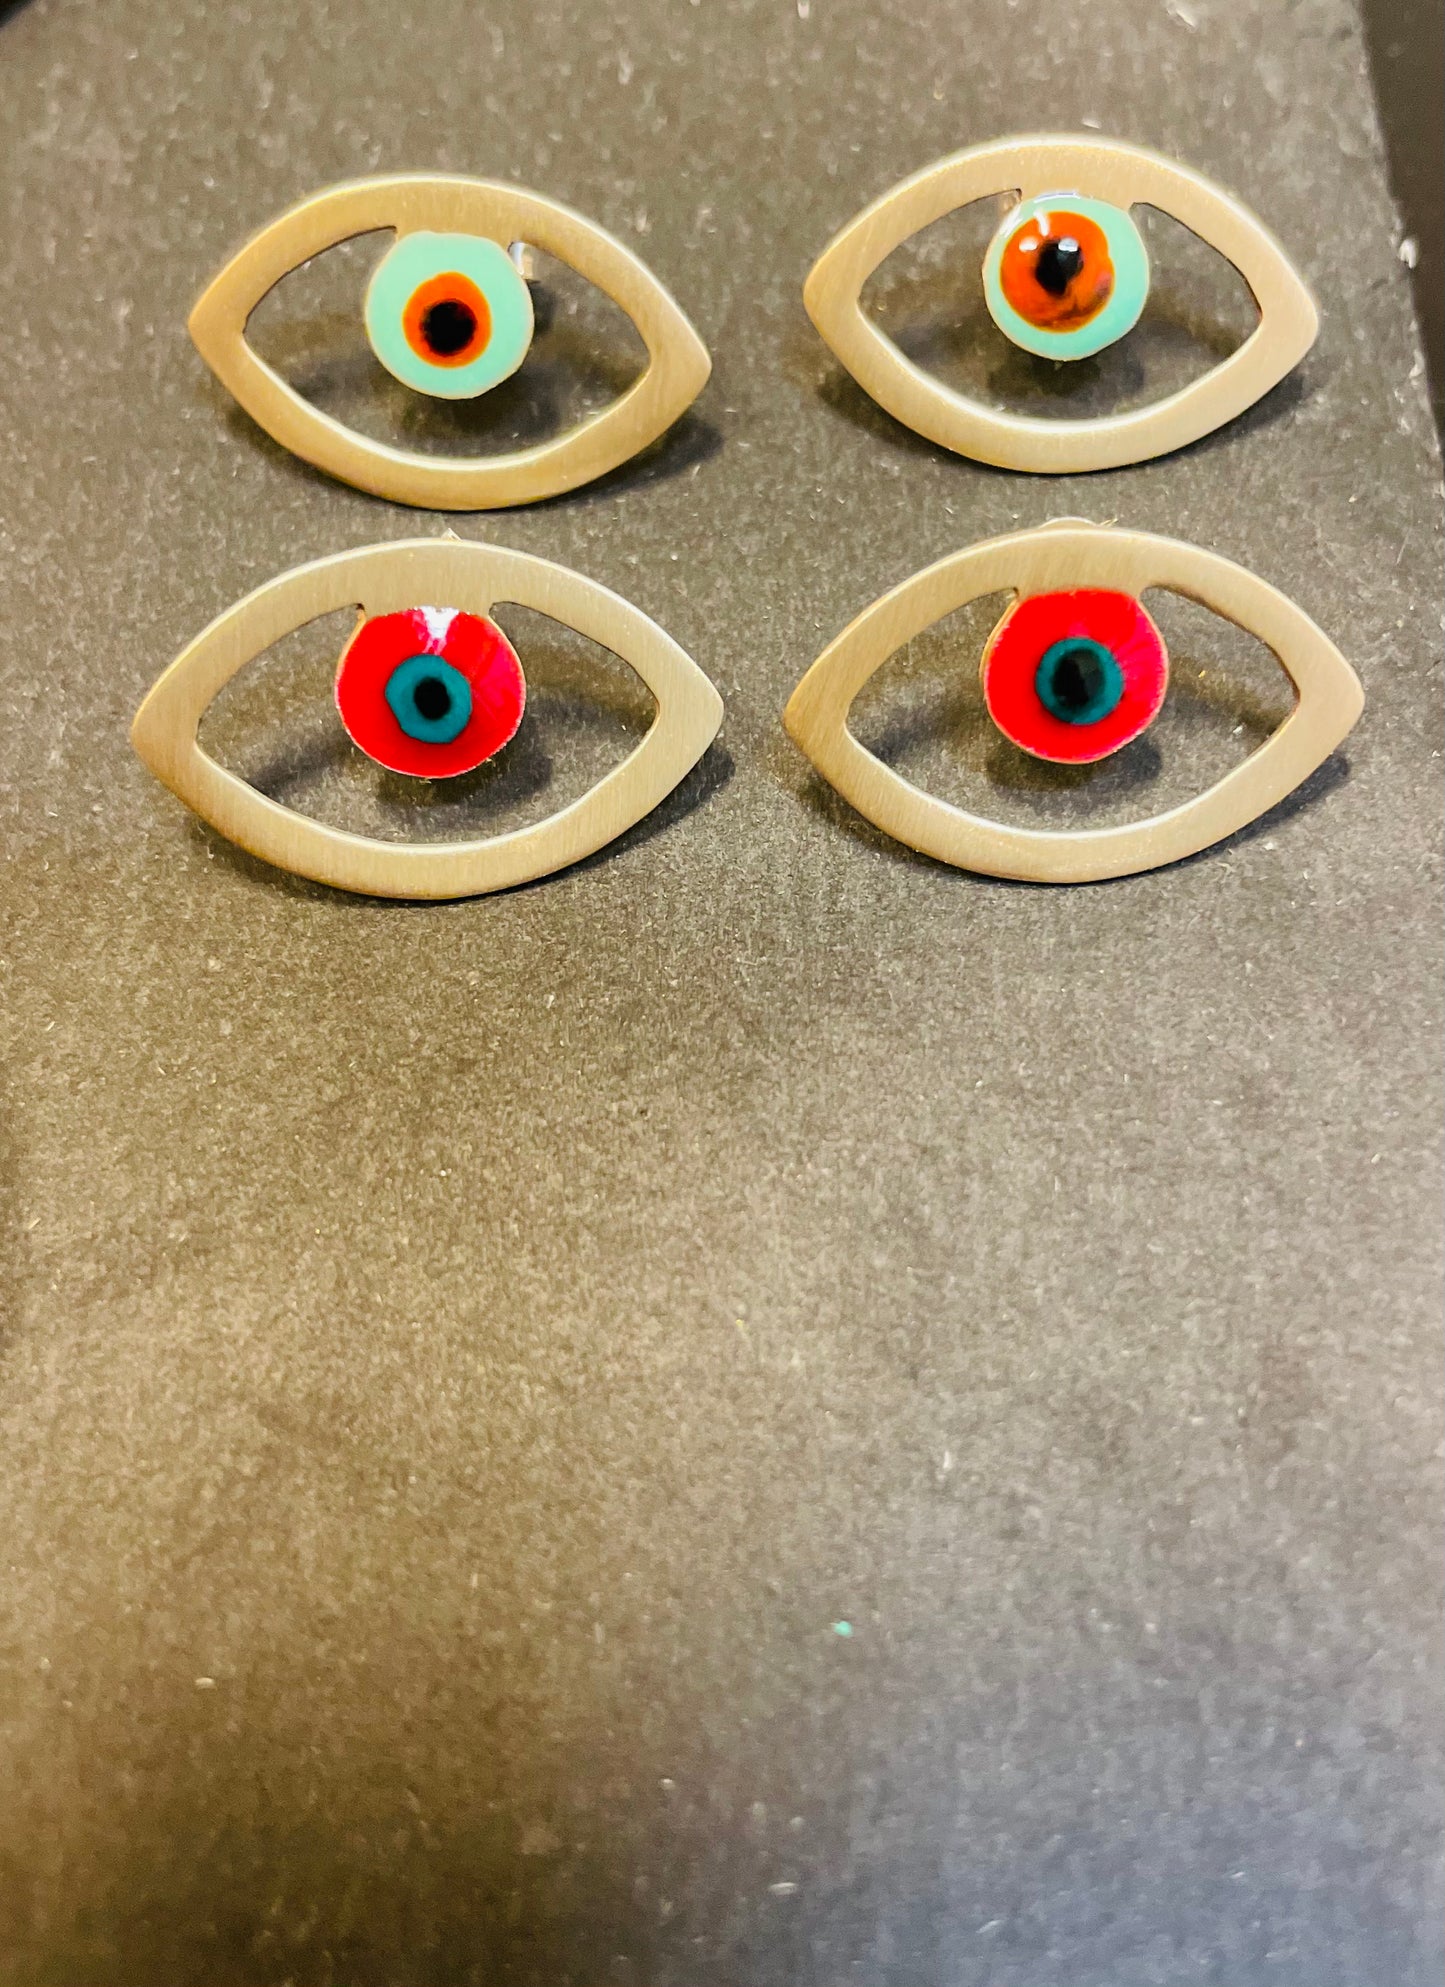 Brass earrings with resin | Yellow Eye Earrings